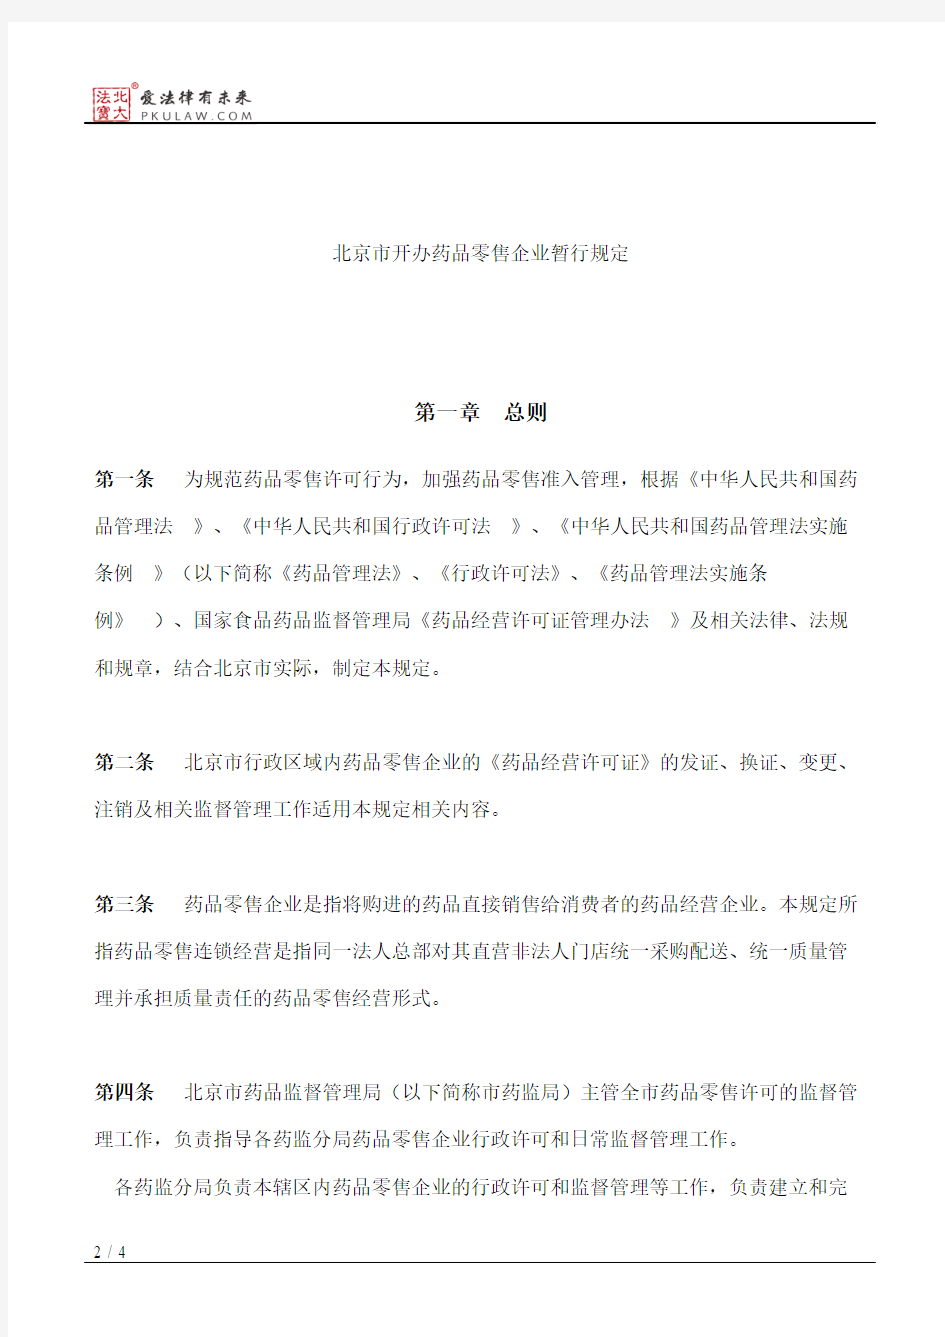 北京市药品监督管理局关于发布《北京市开办药品零售企业暂行规定